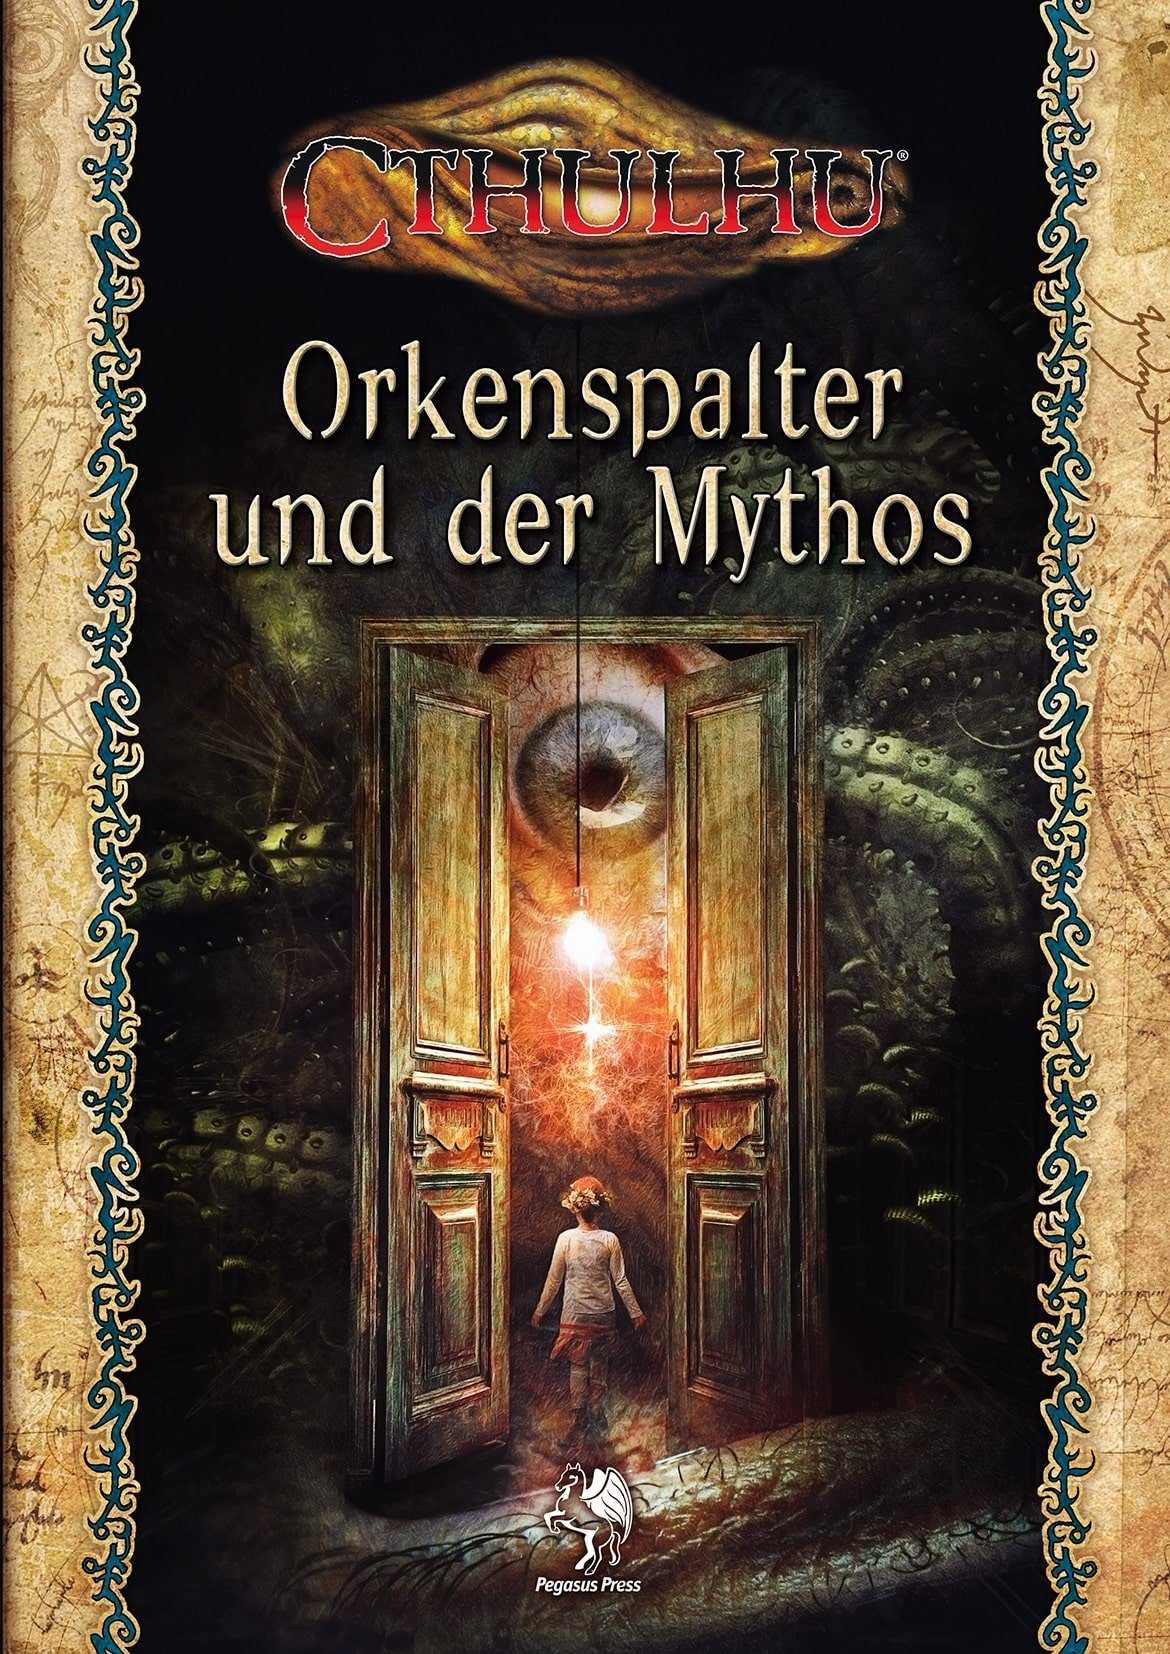 (Softcover) Spiele Mythos Cthulhu: Spiel, der Pegasus und Orkenspalter